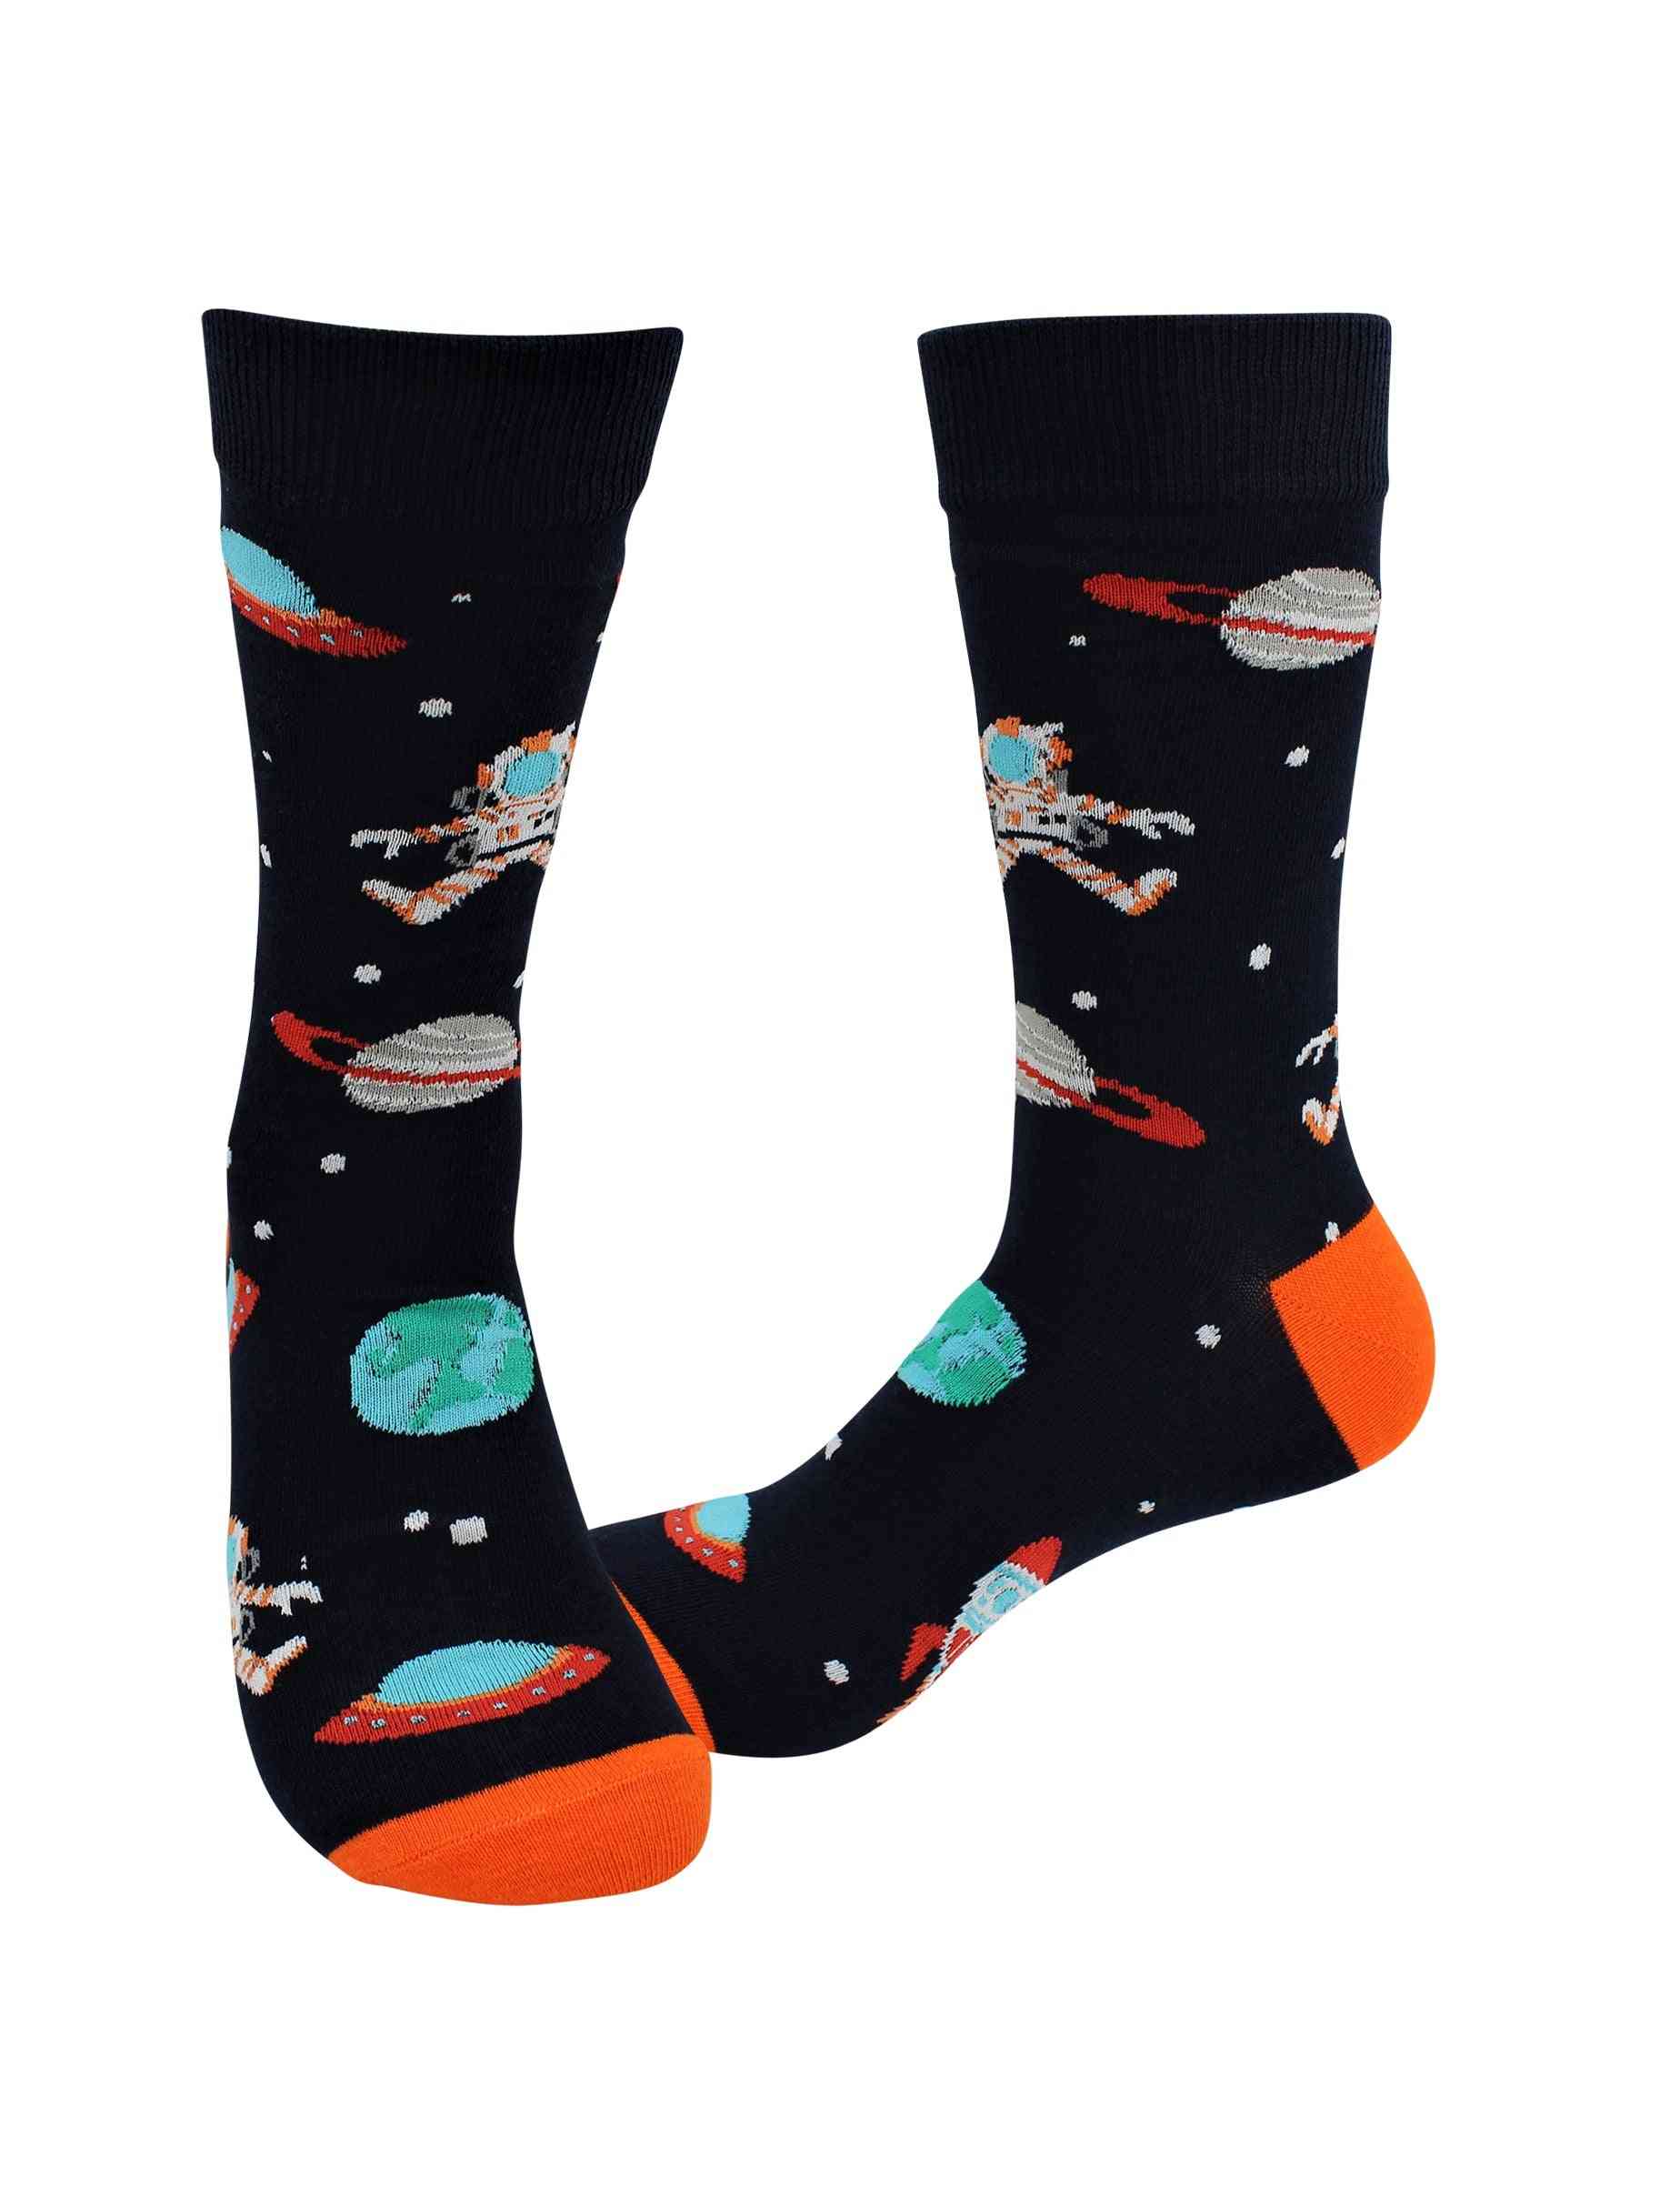 Calzini malati – spazio / astronauta – calzini vestiti casual fuori dal muro